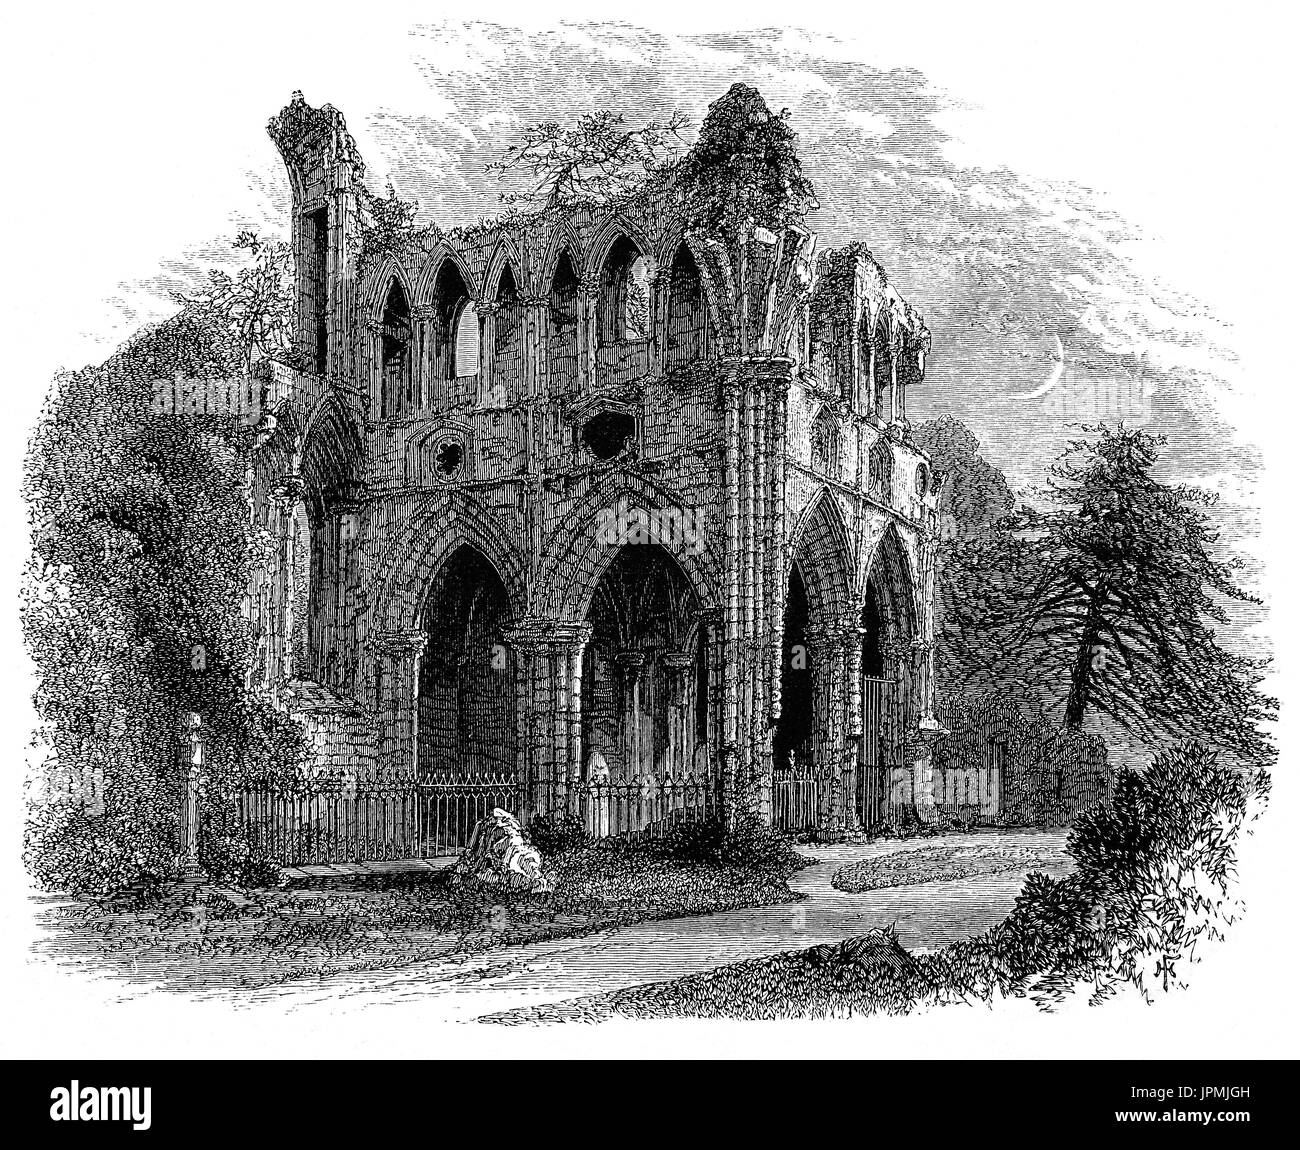 1870 : Sir Walter Scott a passé ses derniers jours à sa maison à Abbotsford, Roxburghs. Il a demandé à être déplacé à la salle à manger afin d'avoir une vue claire de sa bien-aimée rivière Tweed à partir de la fenêtre. Il est mort au 21 septembre 1832 et fut enterré dans l'abbaye de Dryburgh abandonnés déjà - un peu il s'est identifié à un âge précoce comme son lieu de repos. Dans le Roxburghshire Scottish Borders Banque D'Images